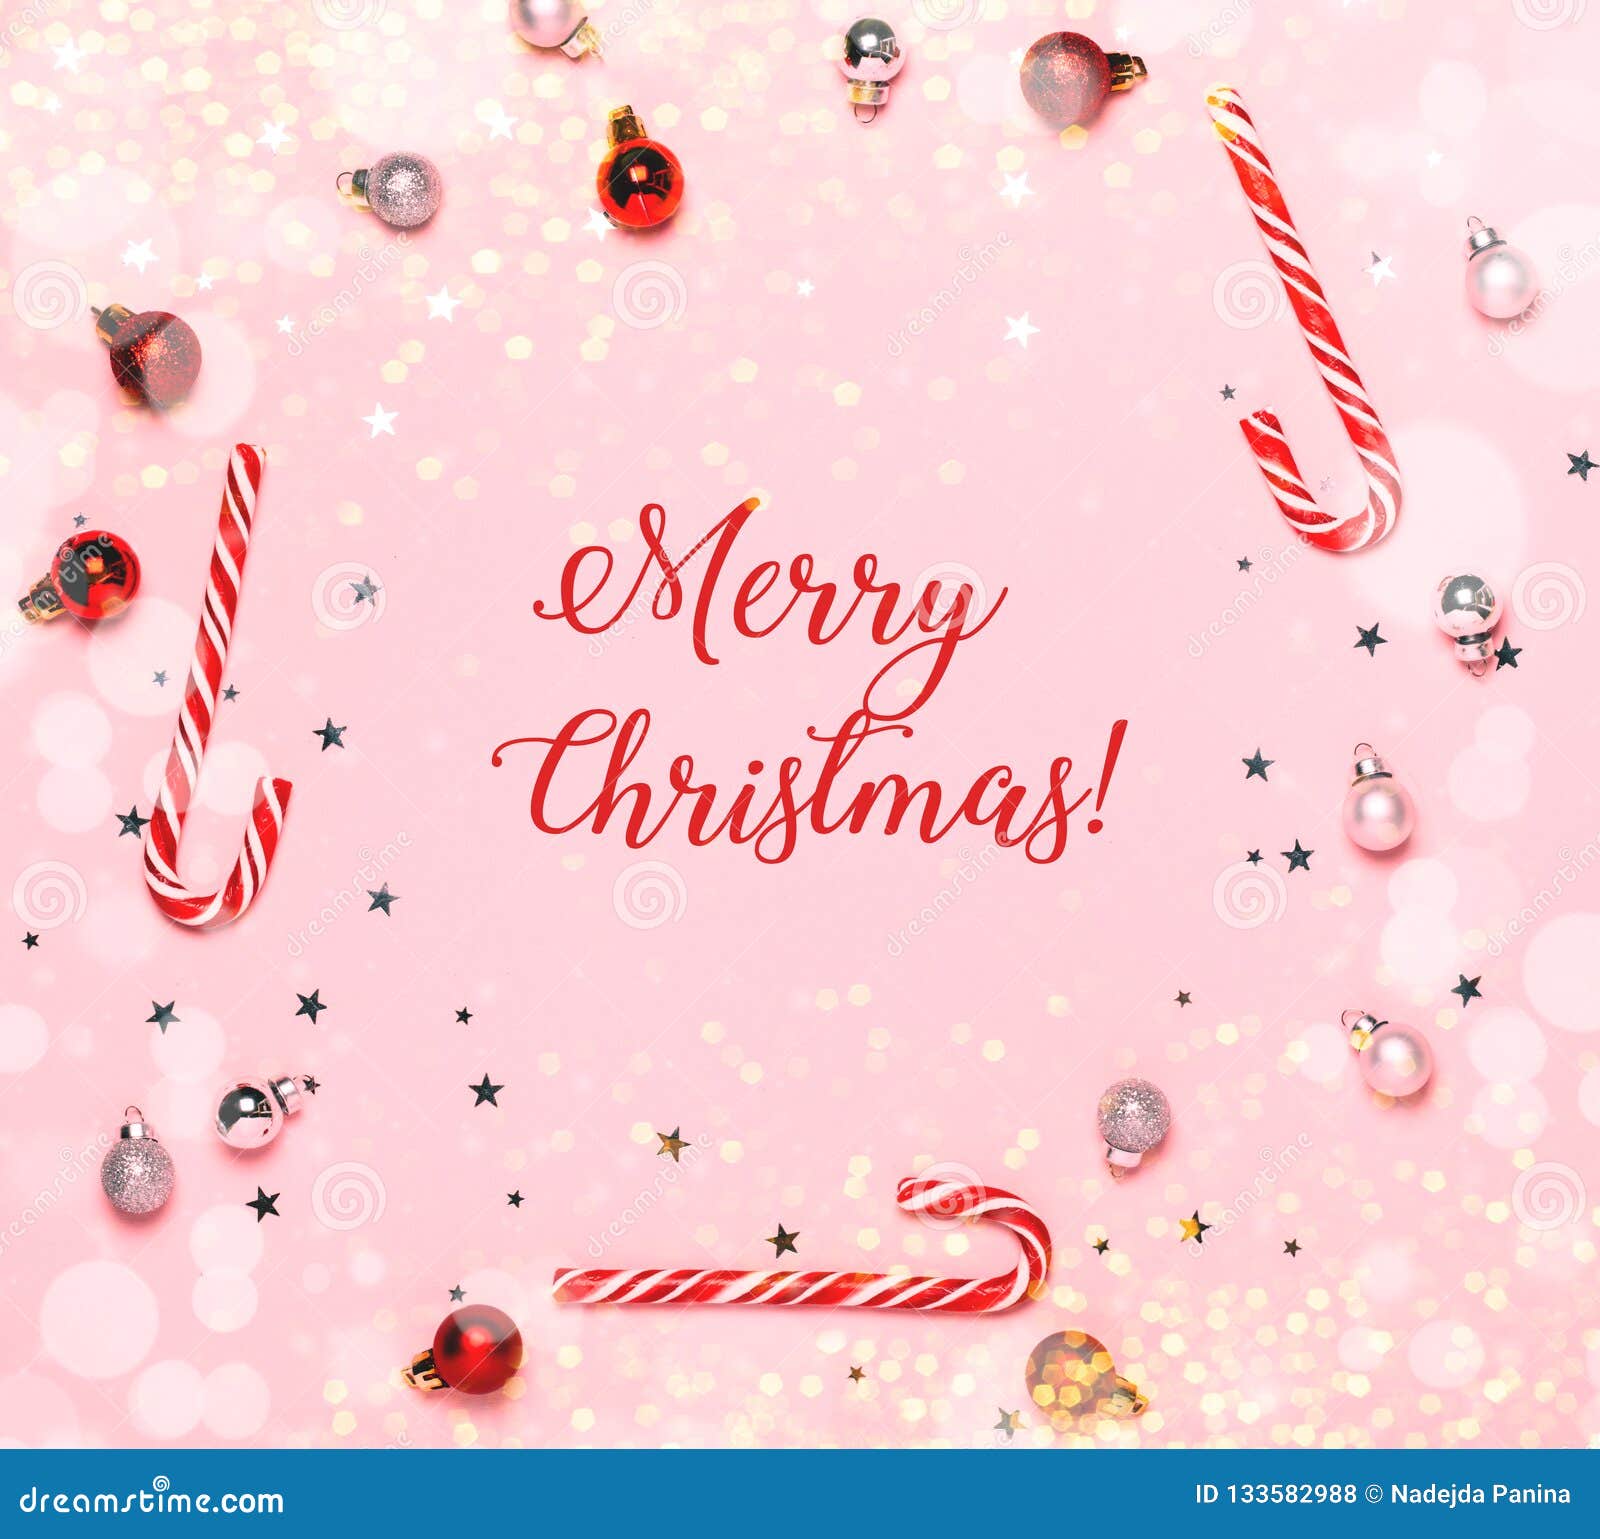 Chữ Giáng sinh trên nền background hồng thật dễ thương và ngọt ngào. Bộ chữ của bức tranh được thiết kế tinh tế và nổi bật trên nền background hồng, giúp bạn cảm thấy hạnh phúc và yêu đời hơn.